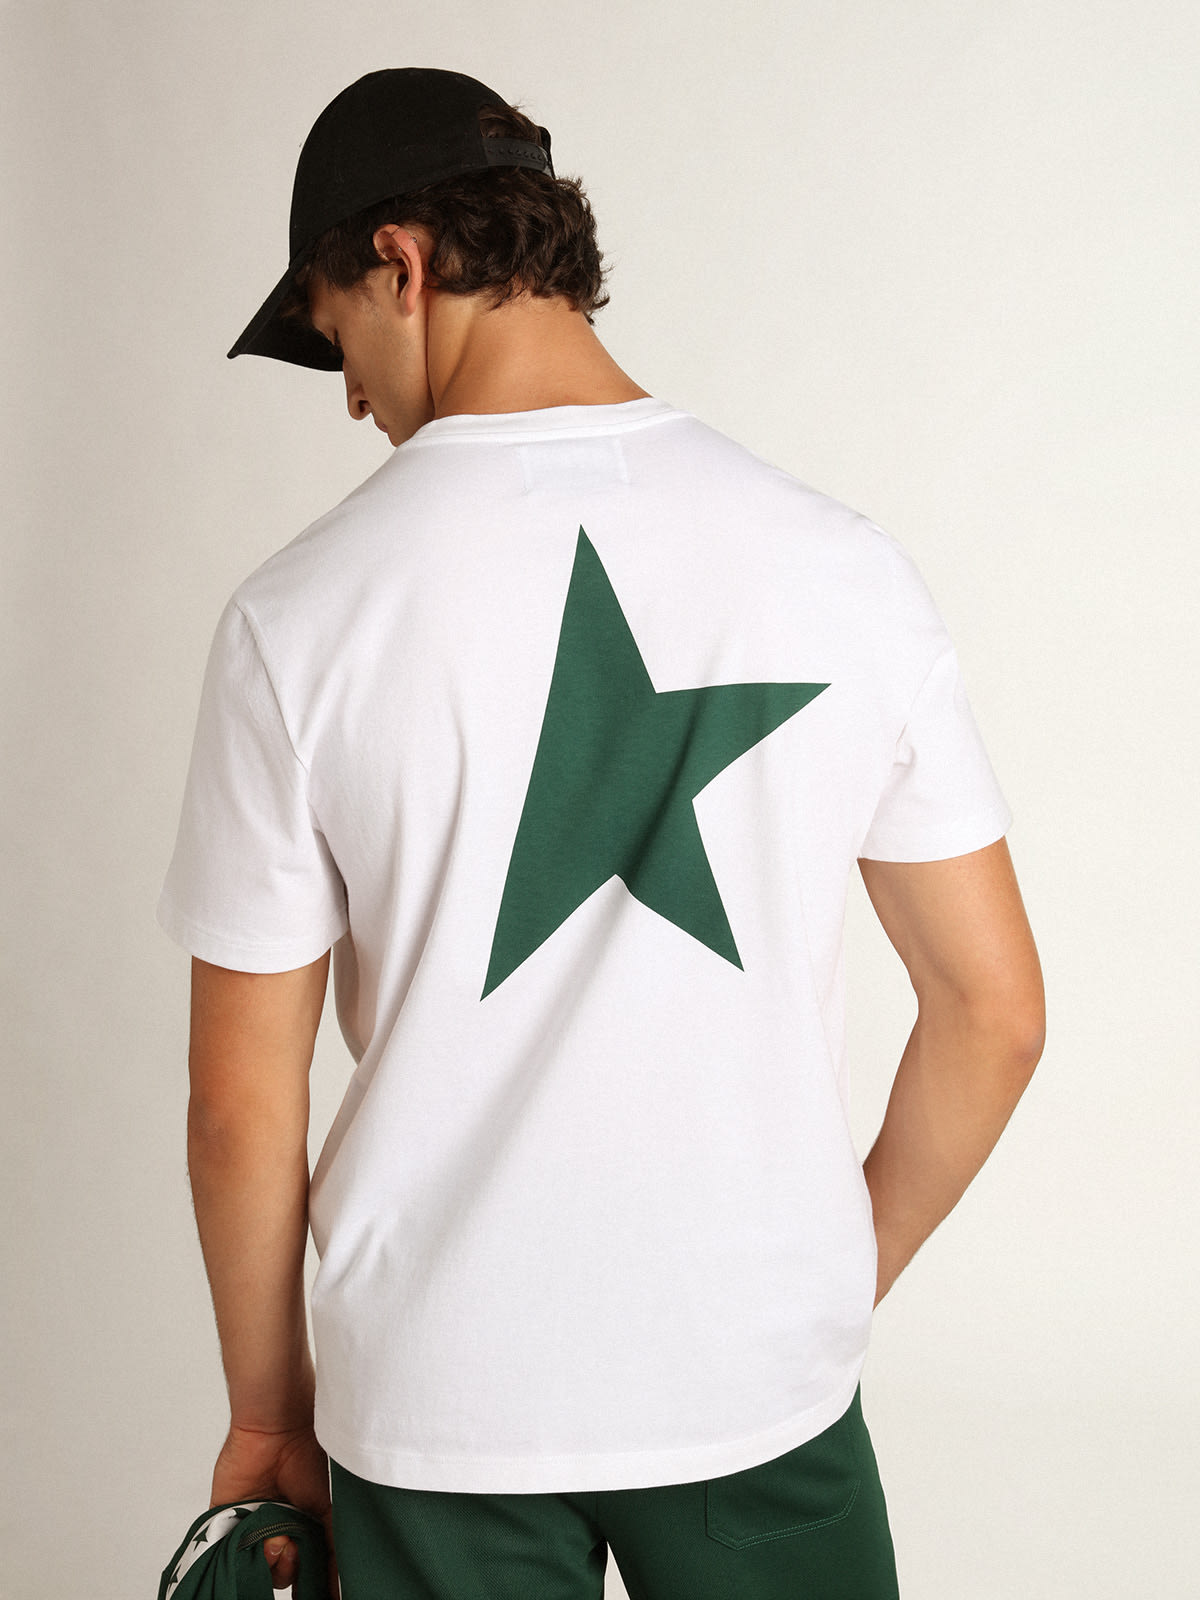 Golden Goose - Camiseta blanca con logo y estrella verdes en contraste para hombre in 